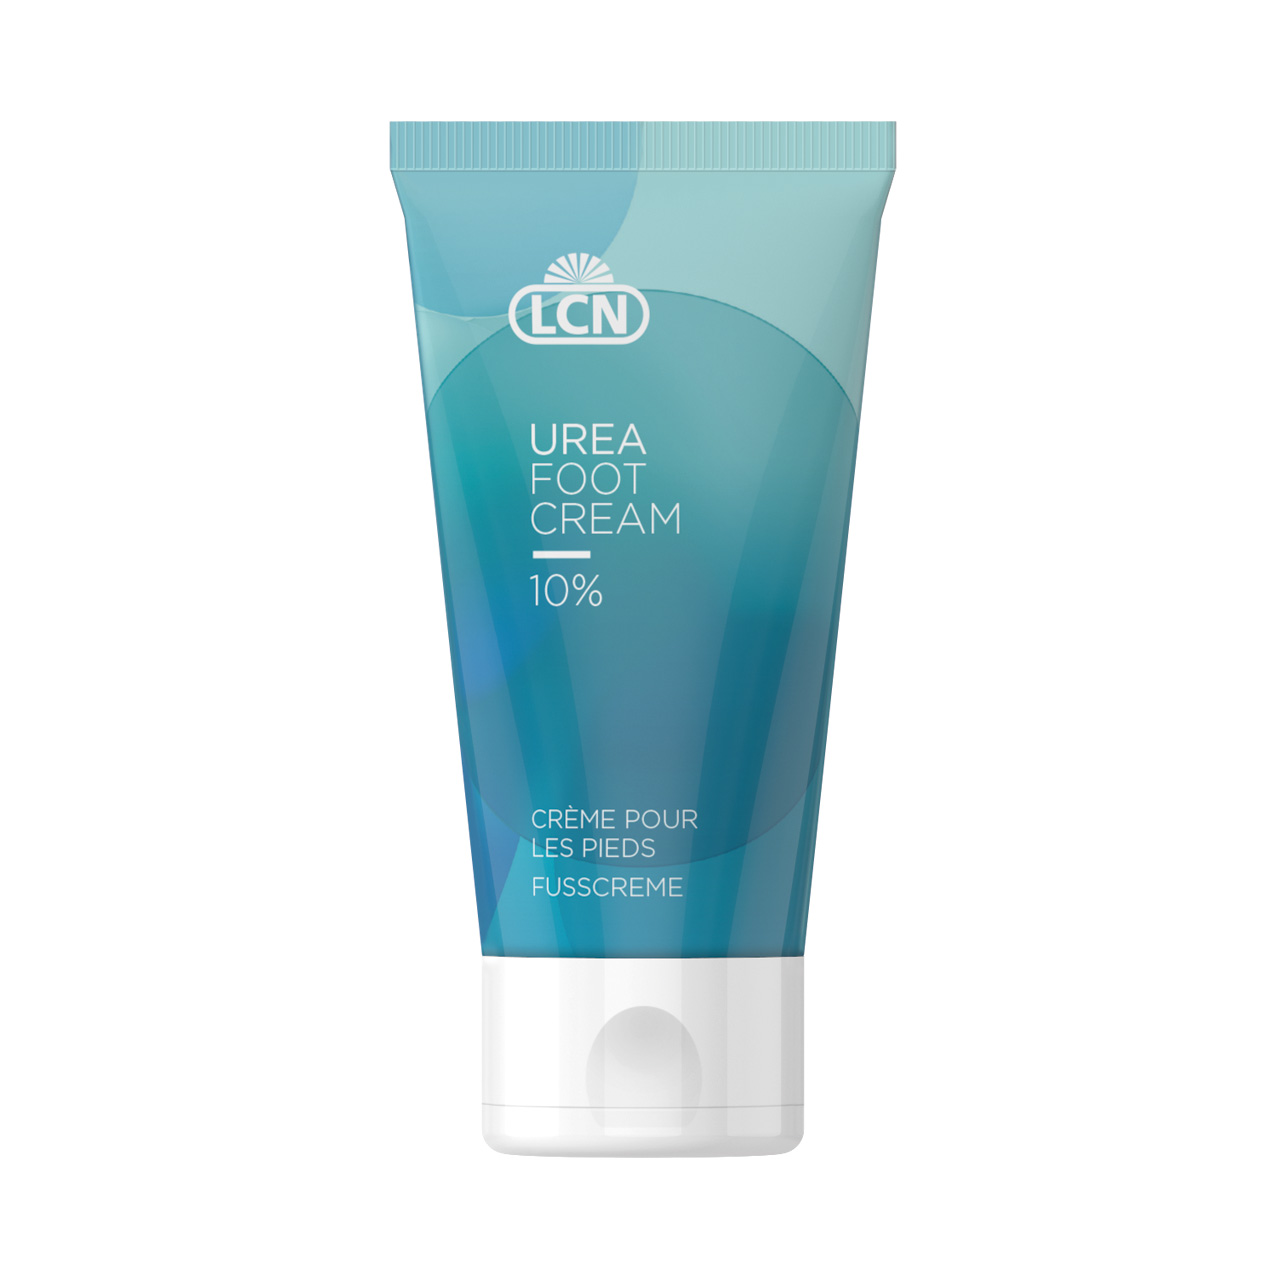 Urea 10% Foot Cream, 50ml Promotion